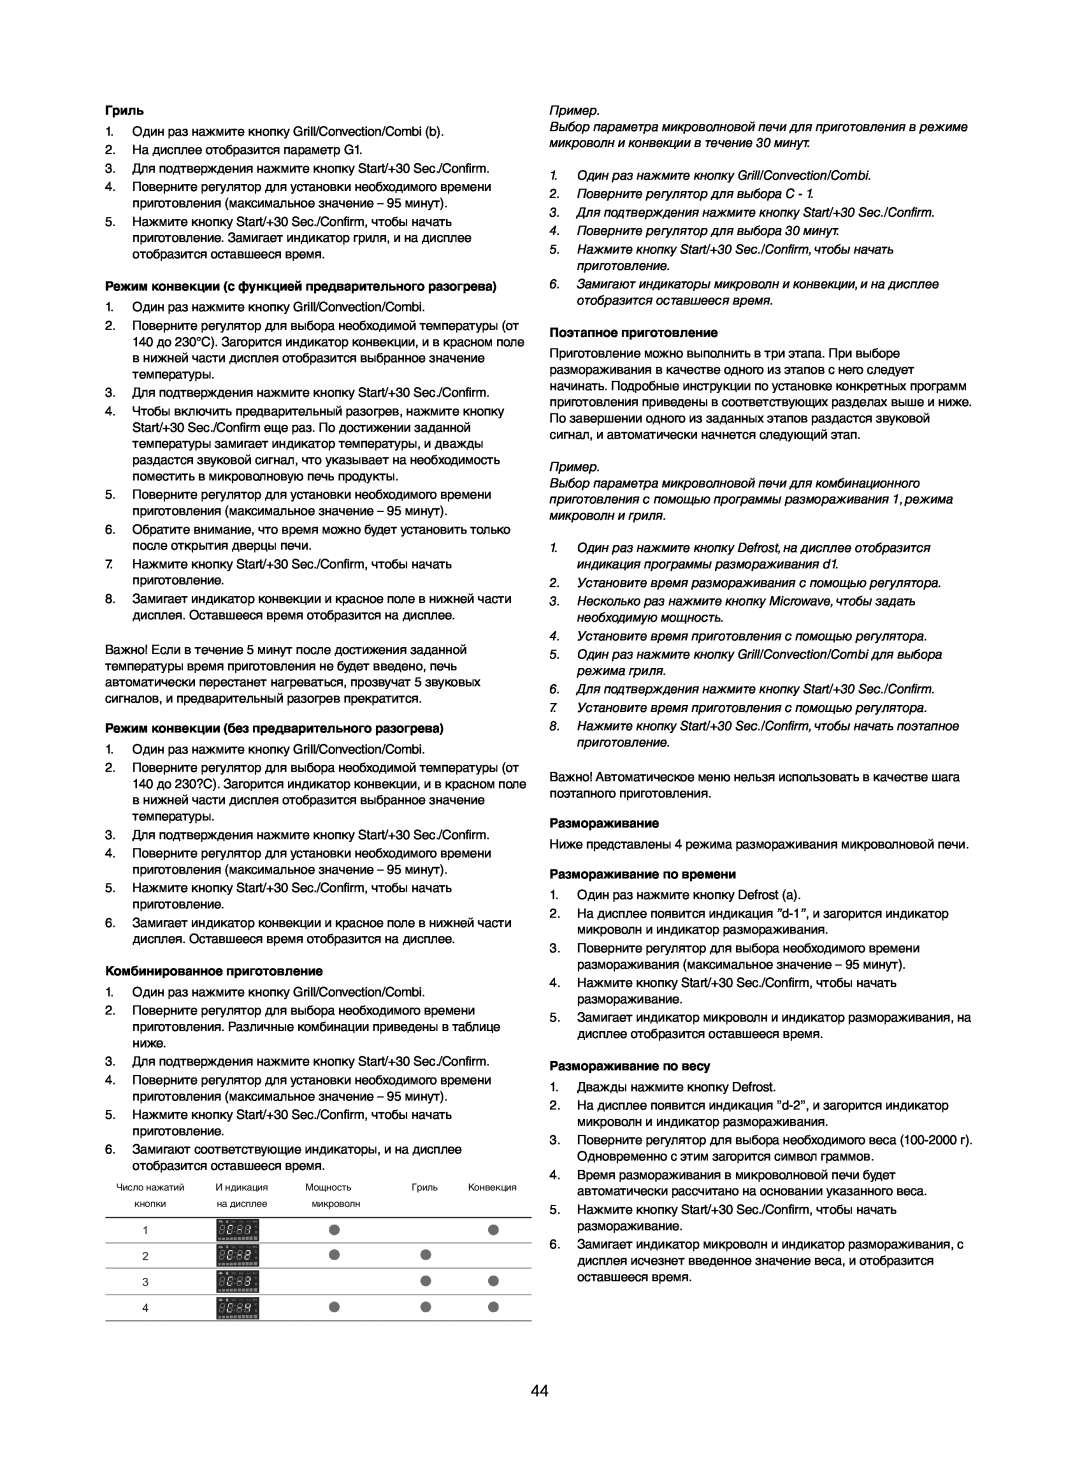 Melissa 253-012 manual Гриль, Режим конвекции с функцией предварительного разогрева, Комбинированное приготовление 